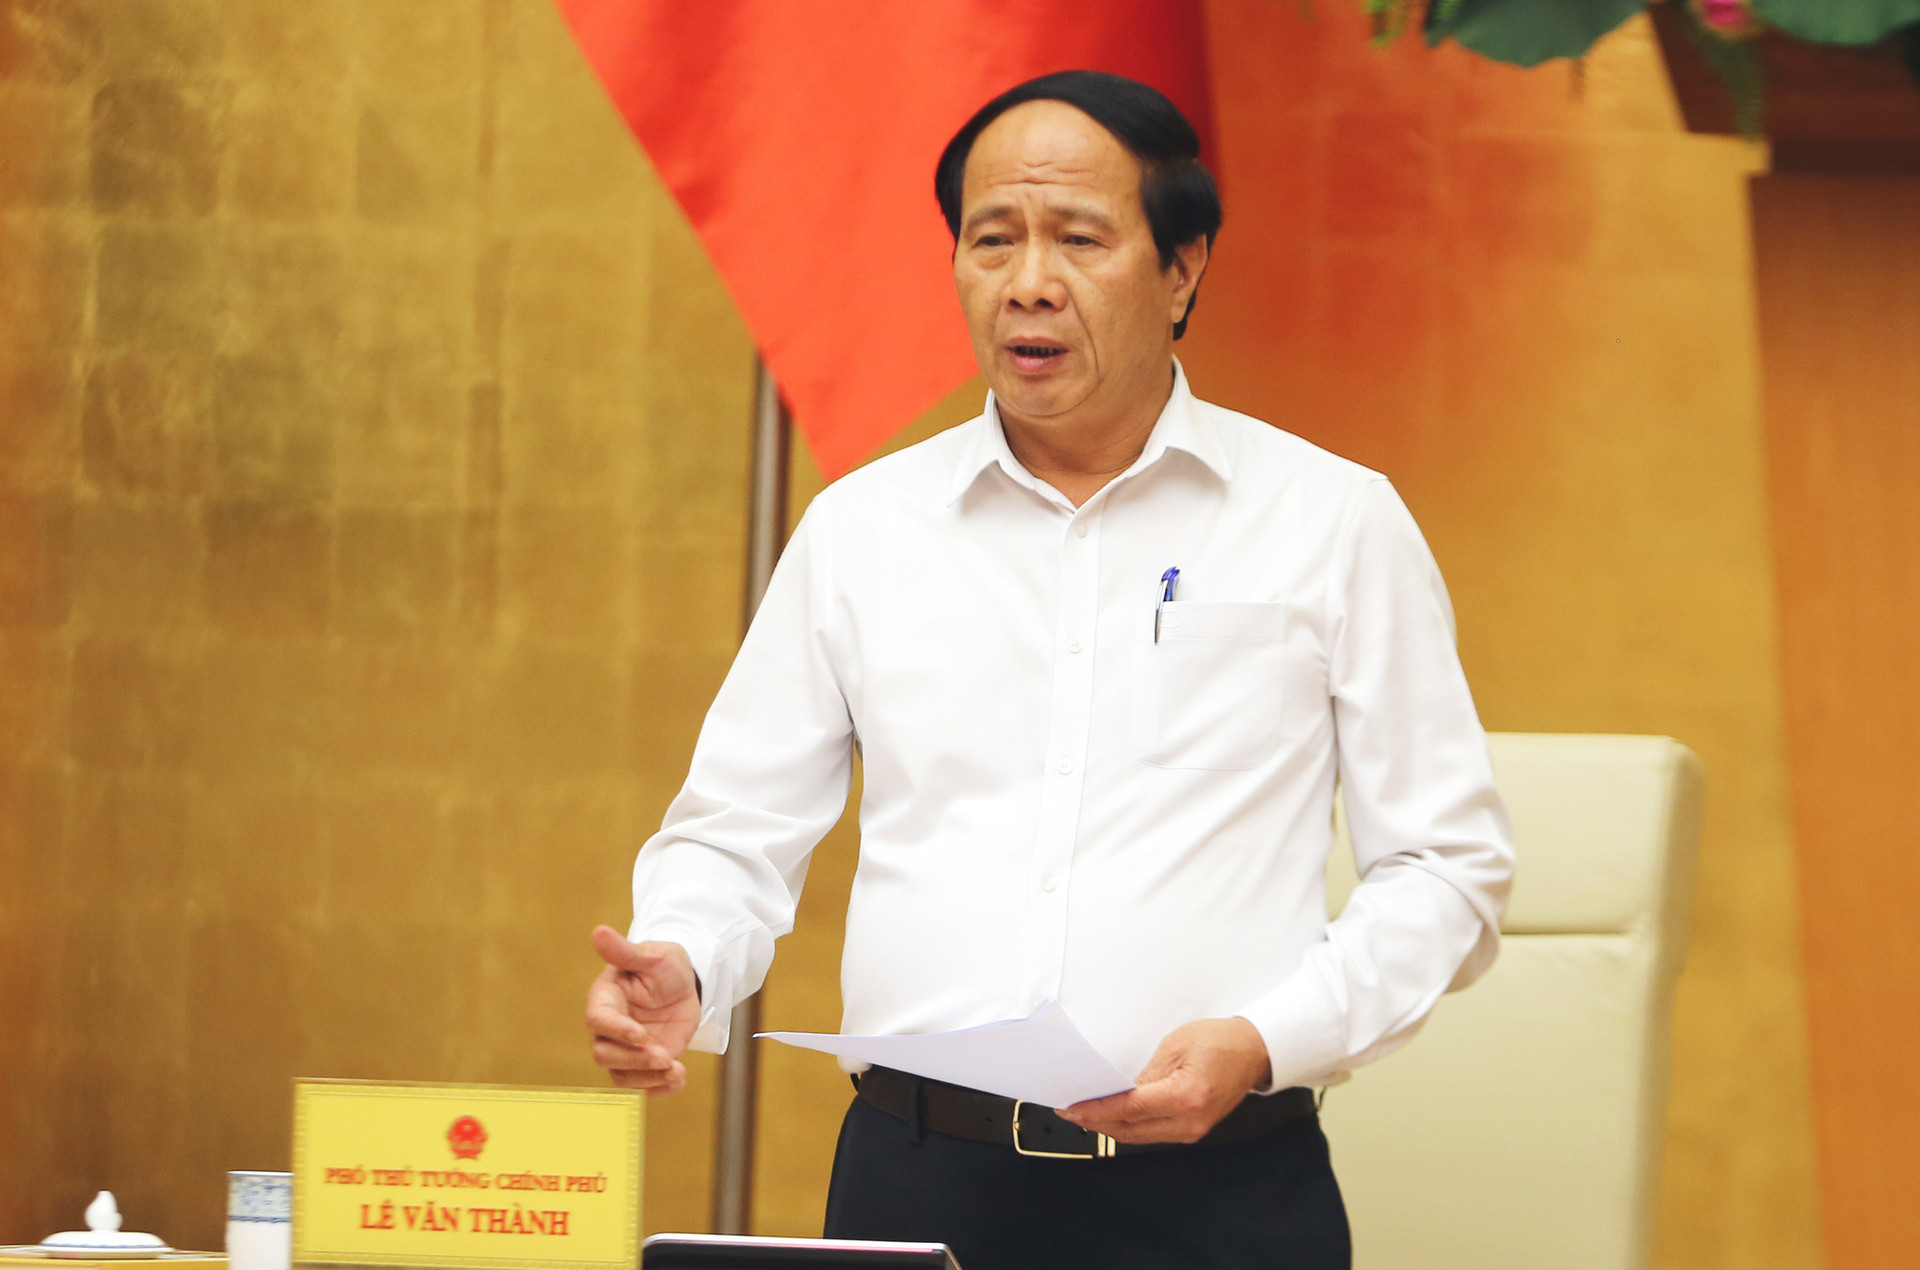 Phân công Chủ tịch, Phó Chủ tịch Ủy ban sông Mê Công Việt Nam